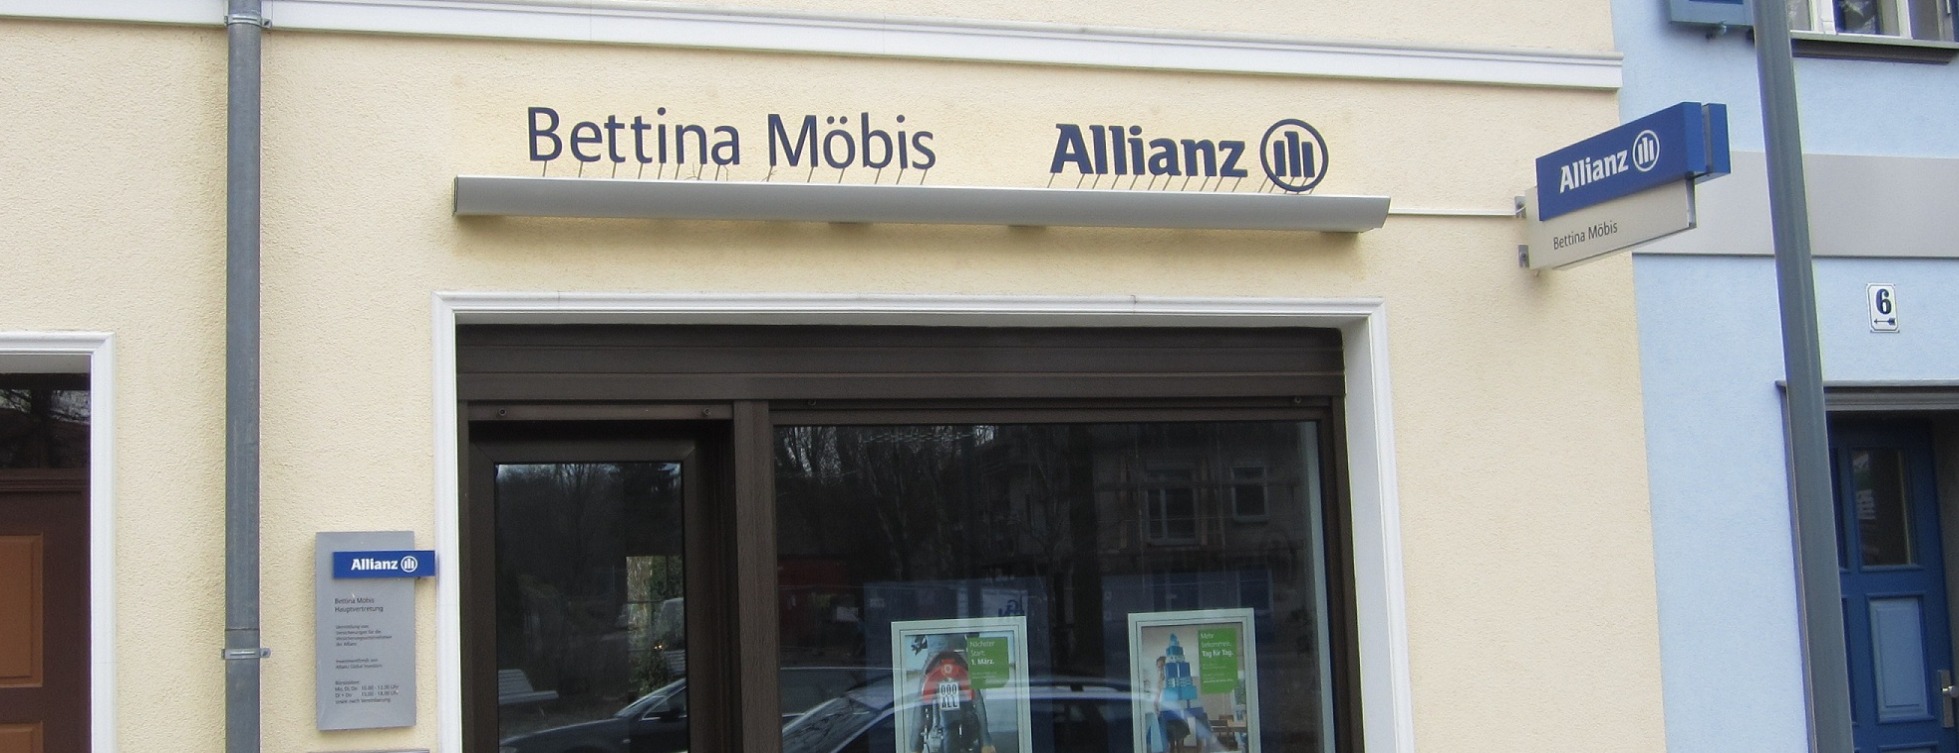 Allianz Versicherung Bettina Möbis Königs Wusterhausen - Allianz Bettina Möbis Königs Wusterhausen